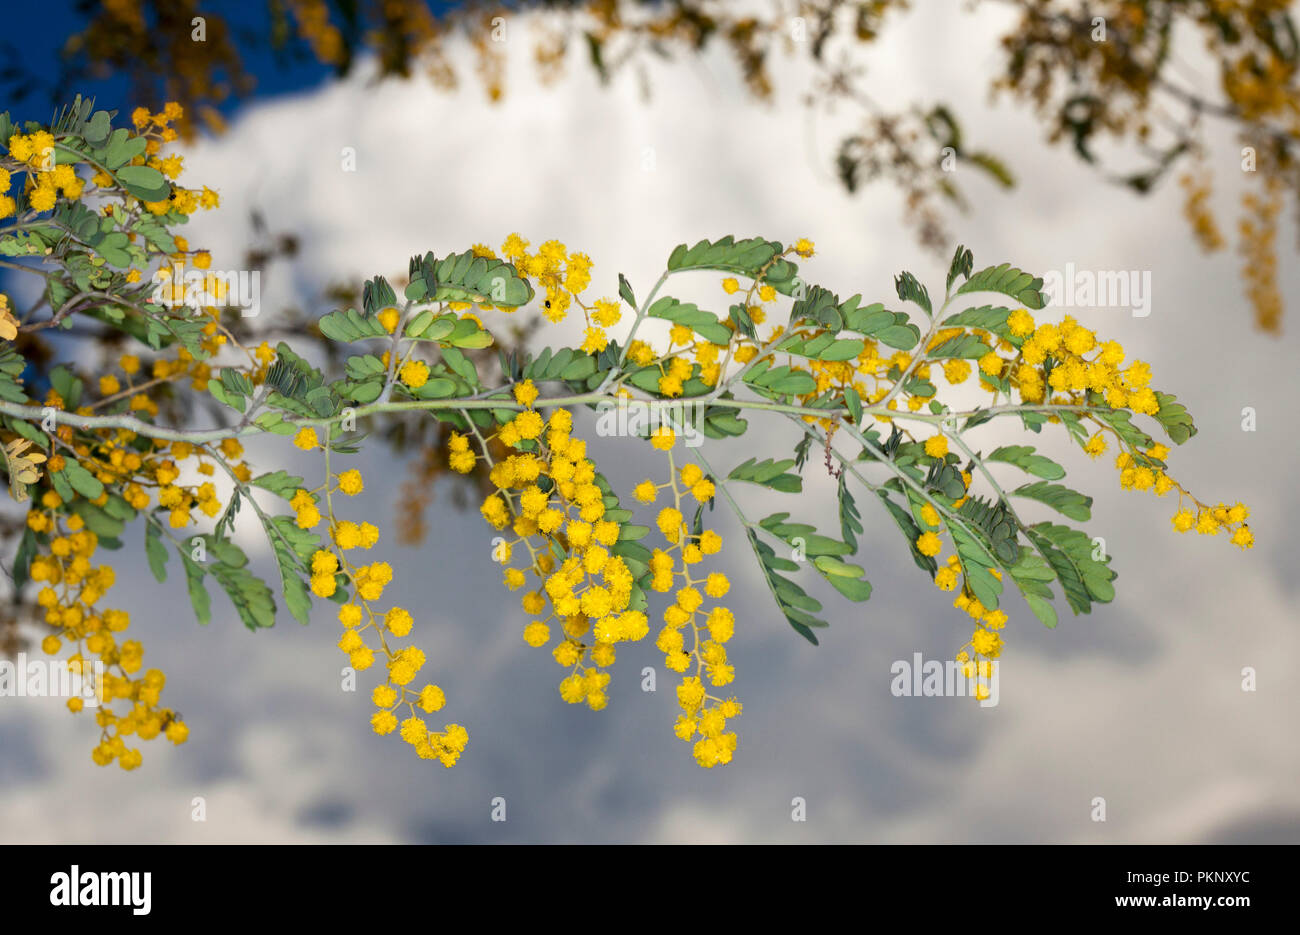 Australische Wildblumen, Cluster von Goldgelb Acacia/wattle Blumen und grüne Blätter auf dem Hintergrund des stürmischen Himmel Stockfoto